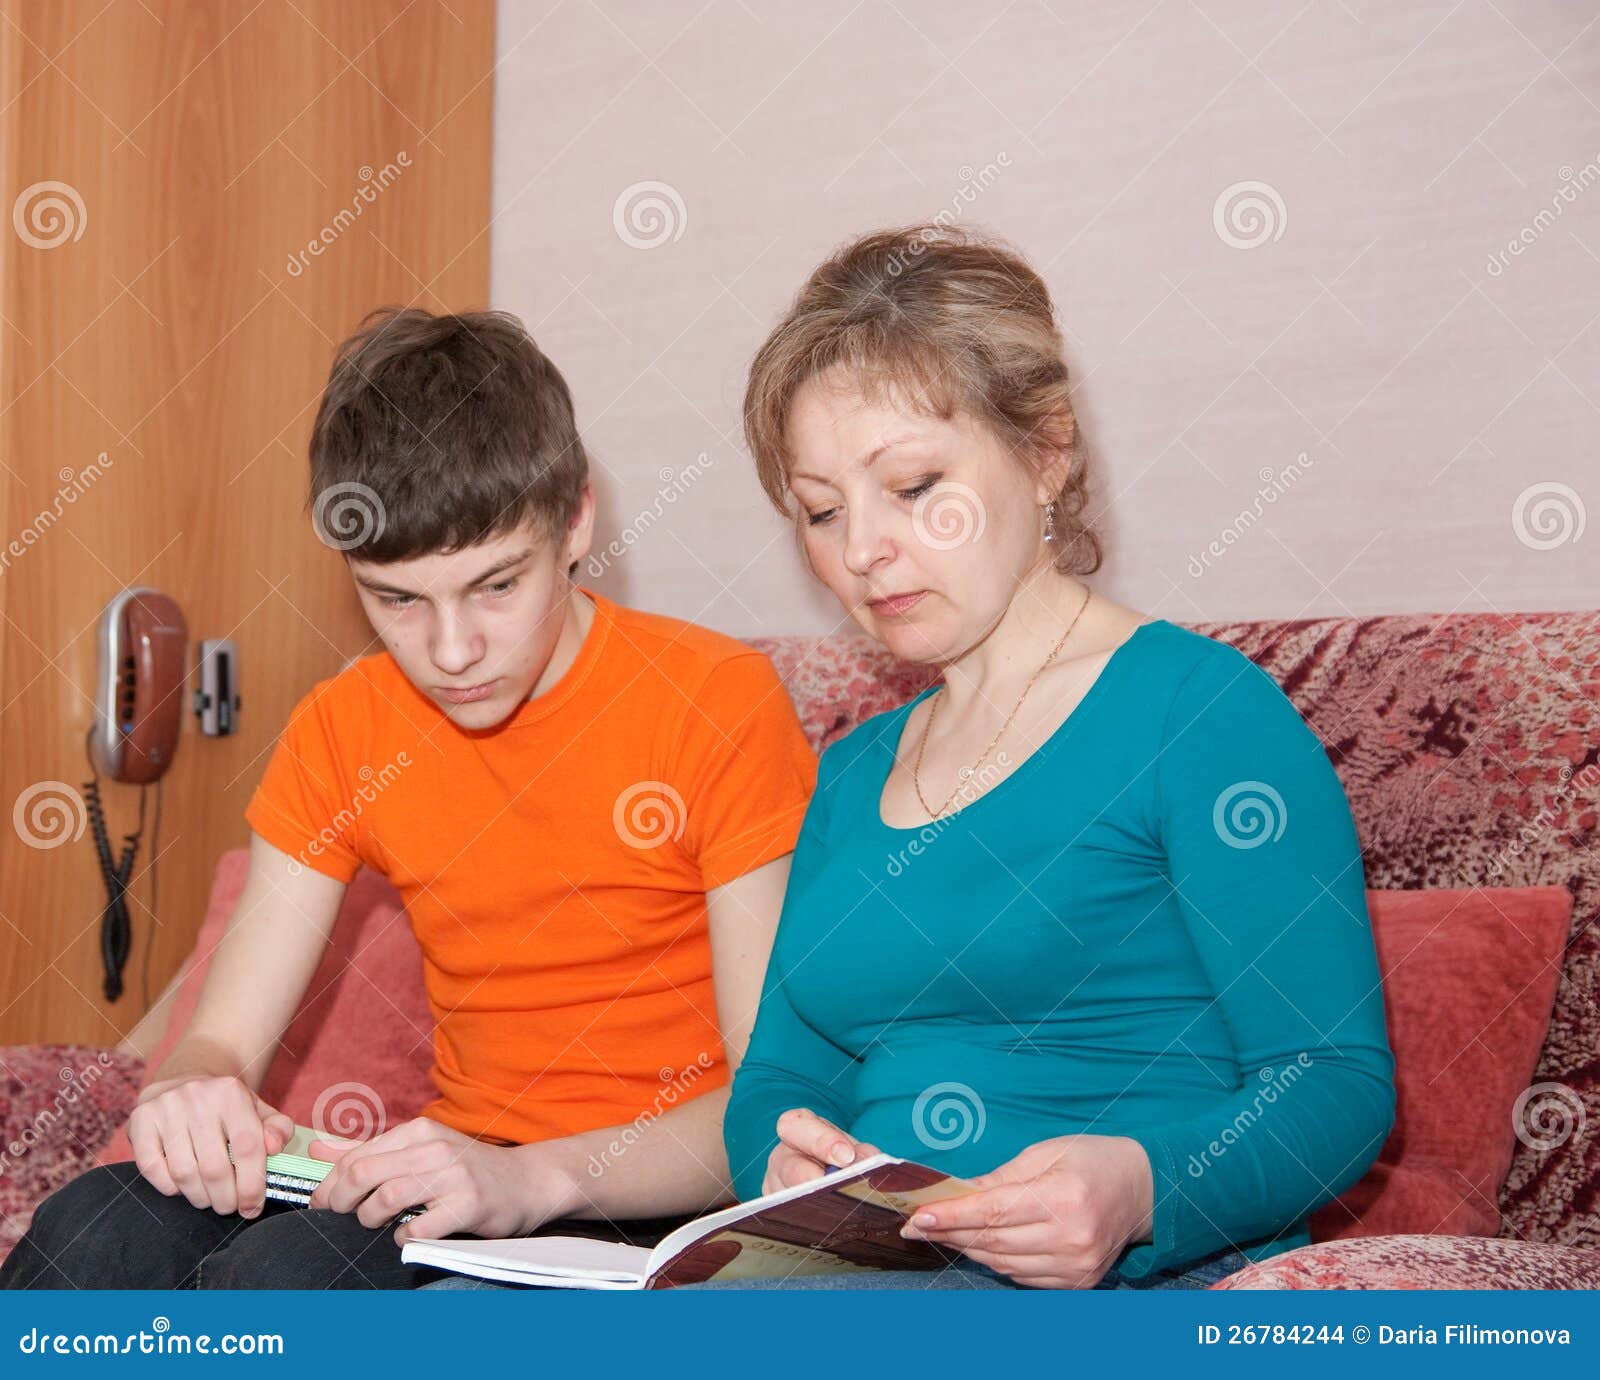 Сын маму будет на работу. Мать проводит сына. Мать и сын учатся. Мама показывает сыну картинку. Мама помогает сыну с уроками.